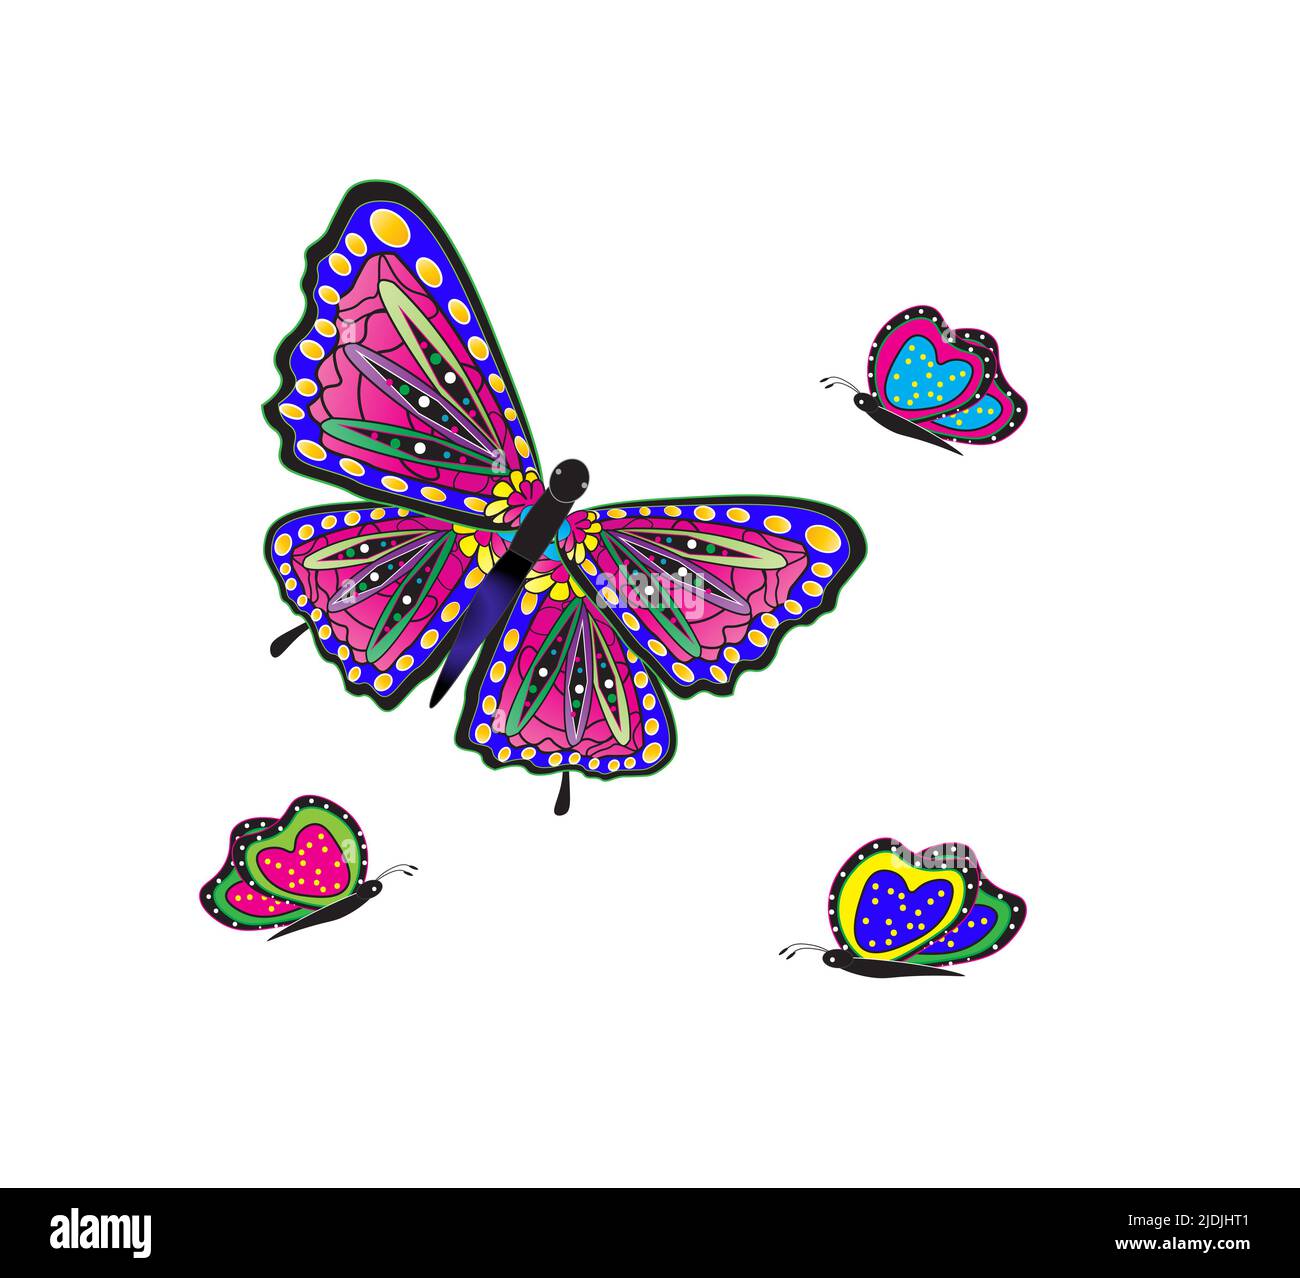 Illustrazione grafica di Butterfly grassetto brillante in colori vivaci Foto Stock